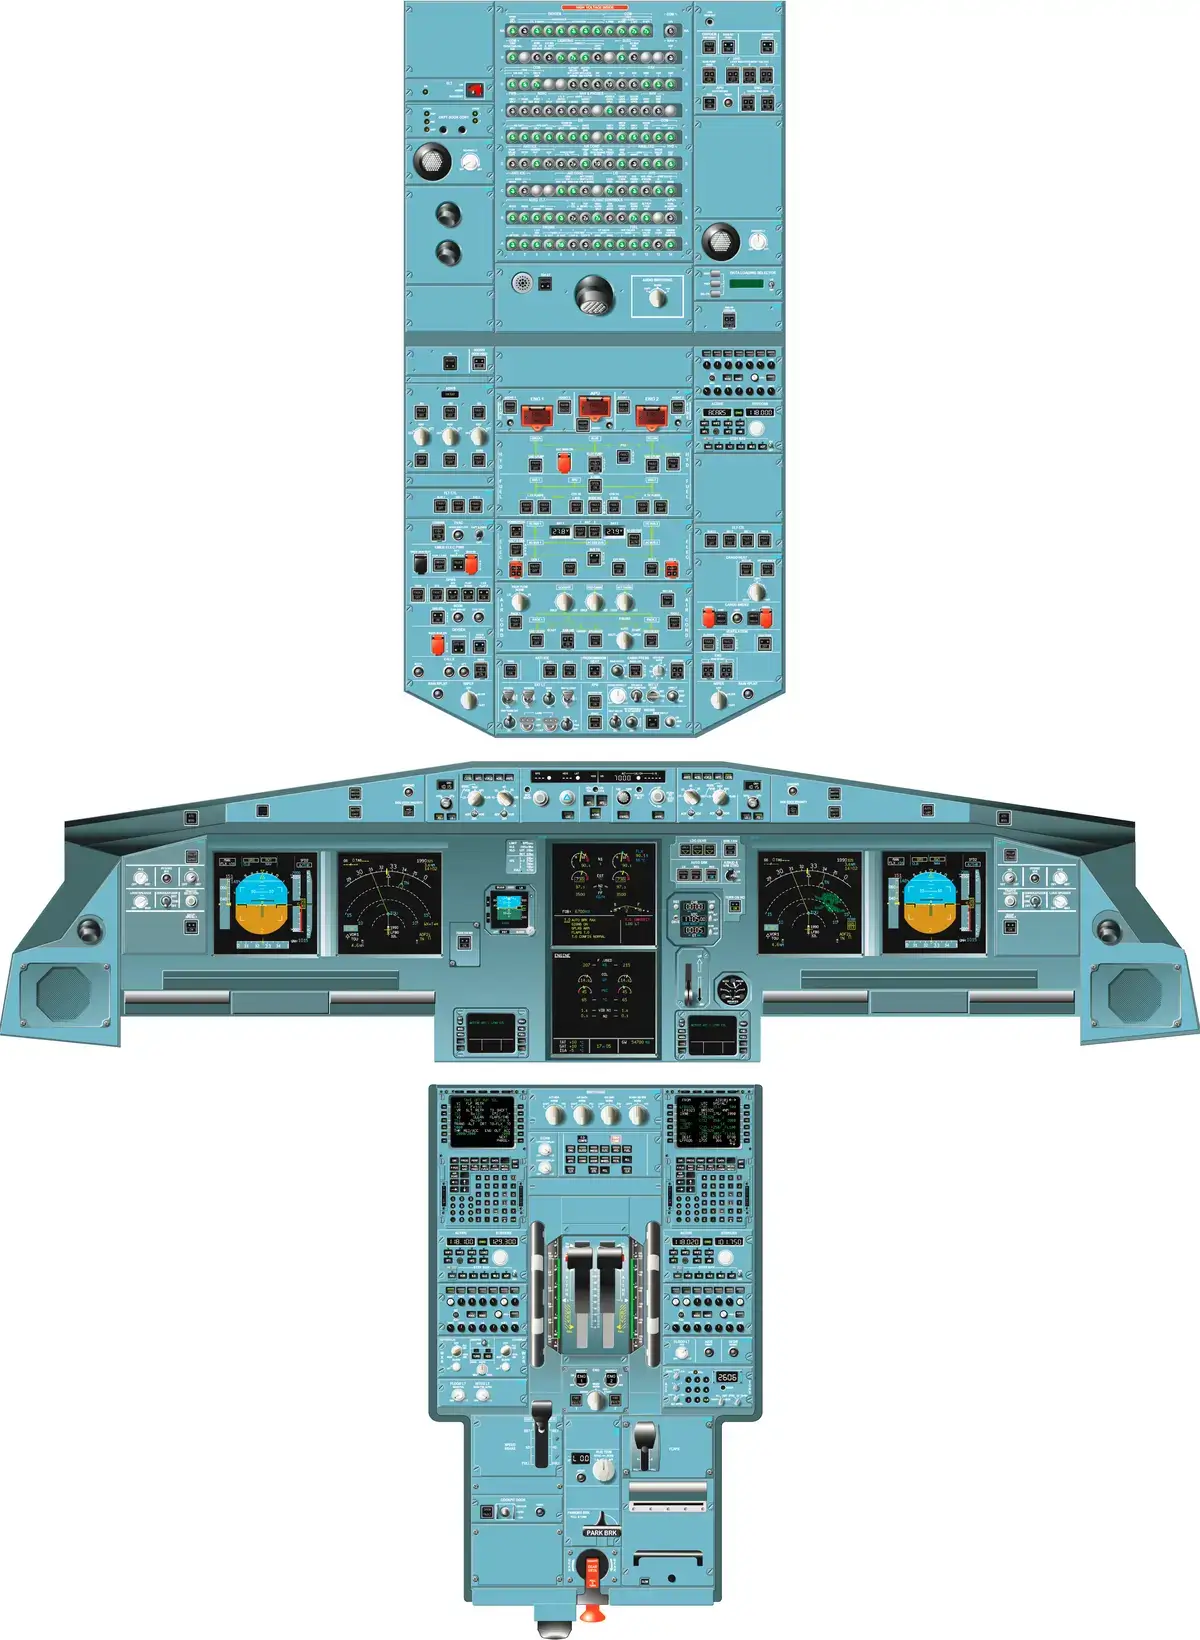 A320 Cockpit Panels